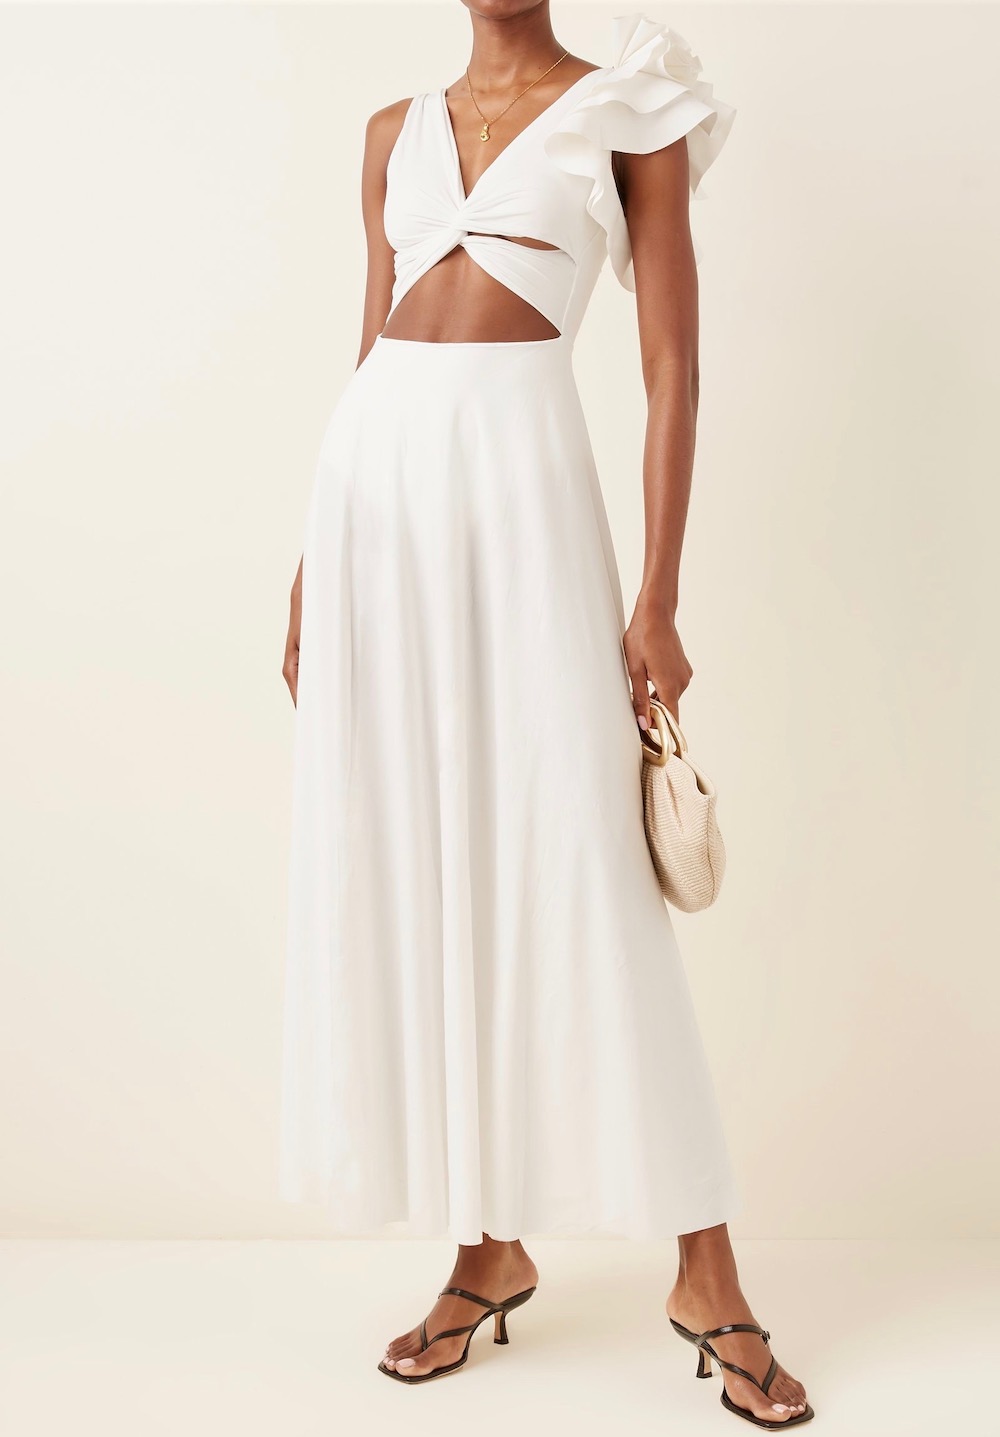 White Summer Dresses 2022 Update #1